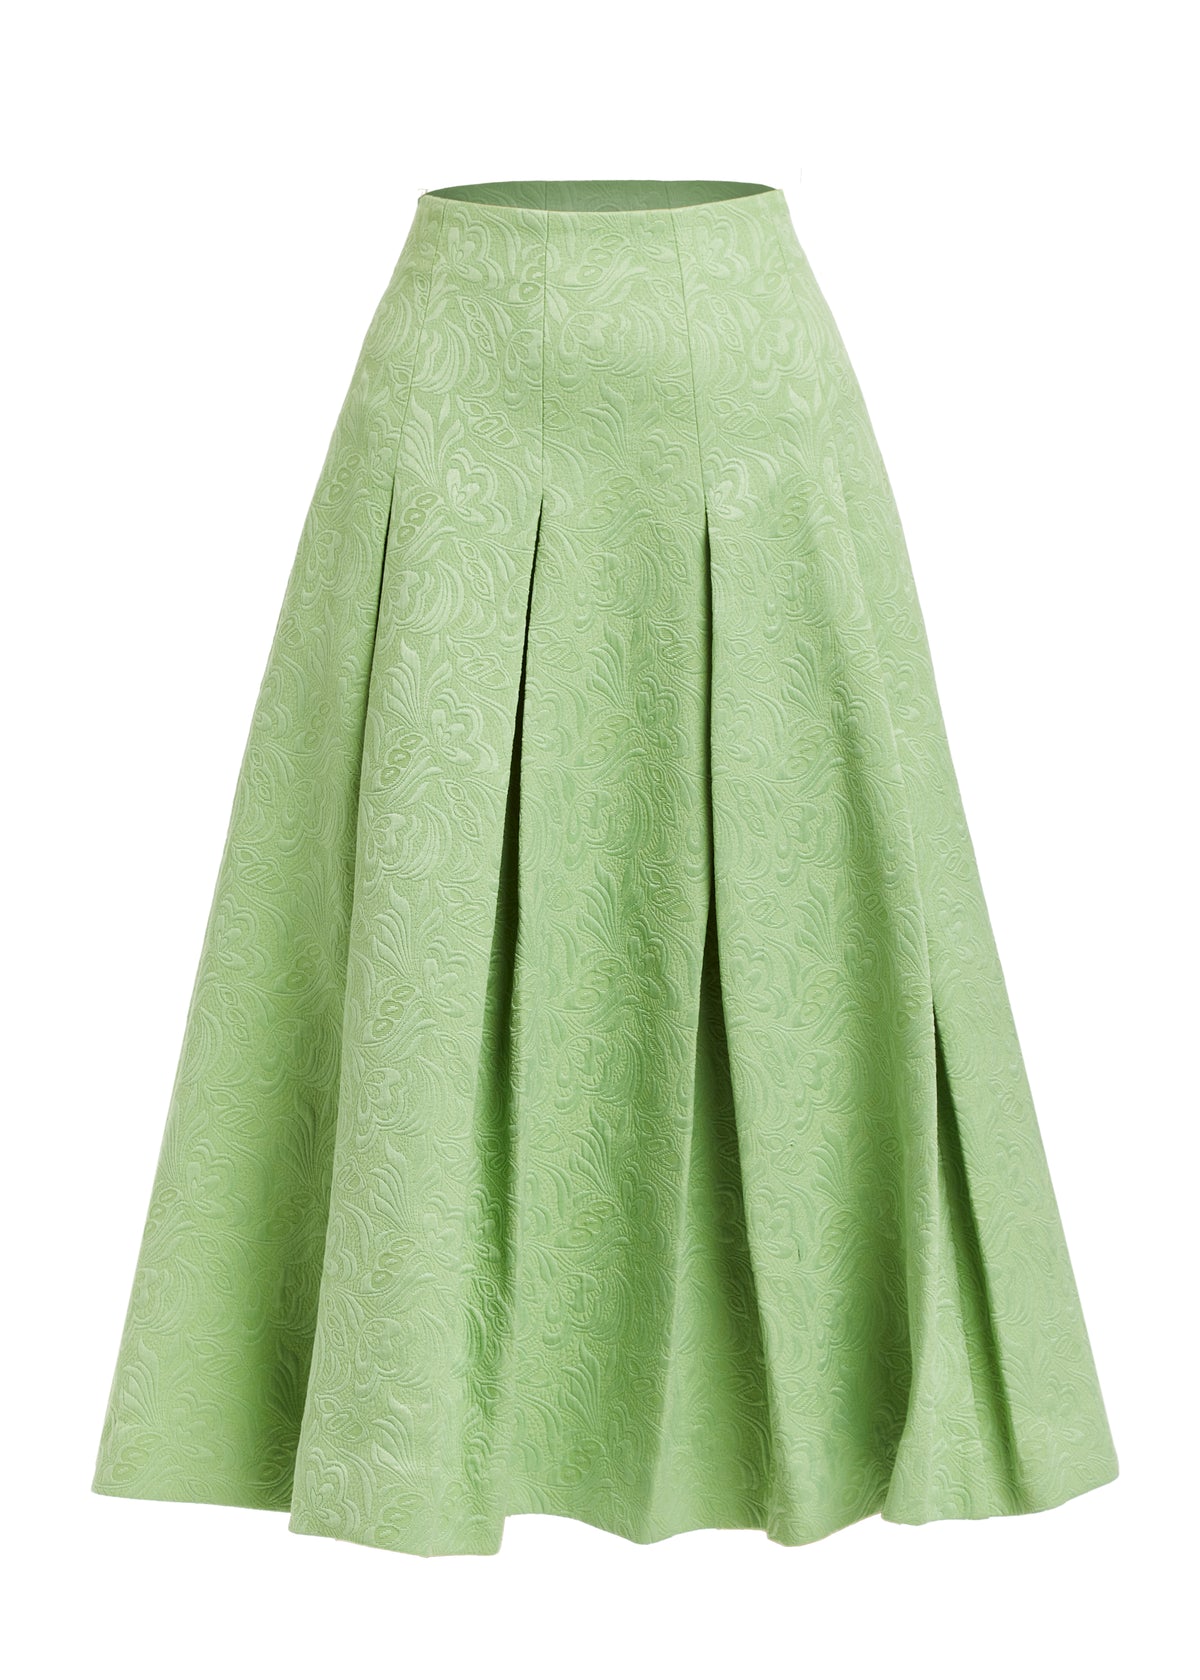 Seville Midi Skirt in Green Jacquard